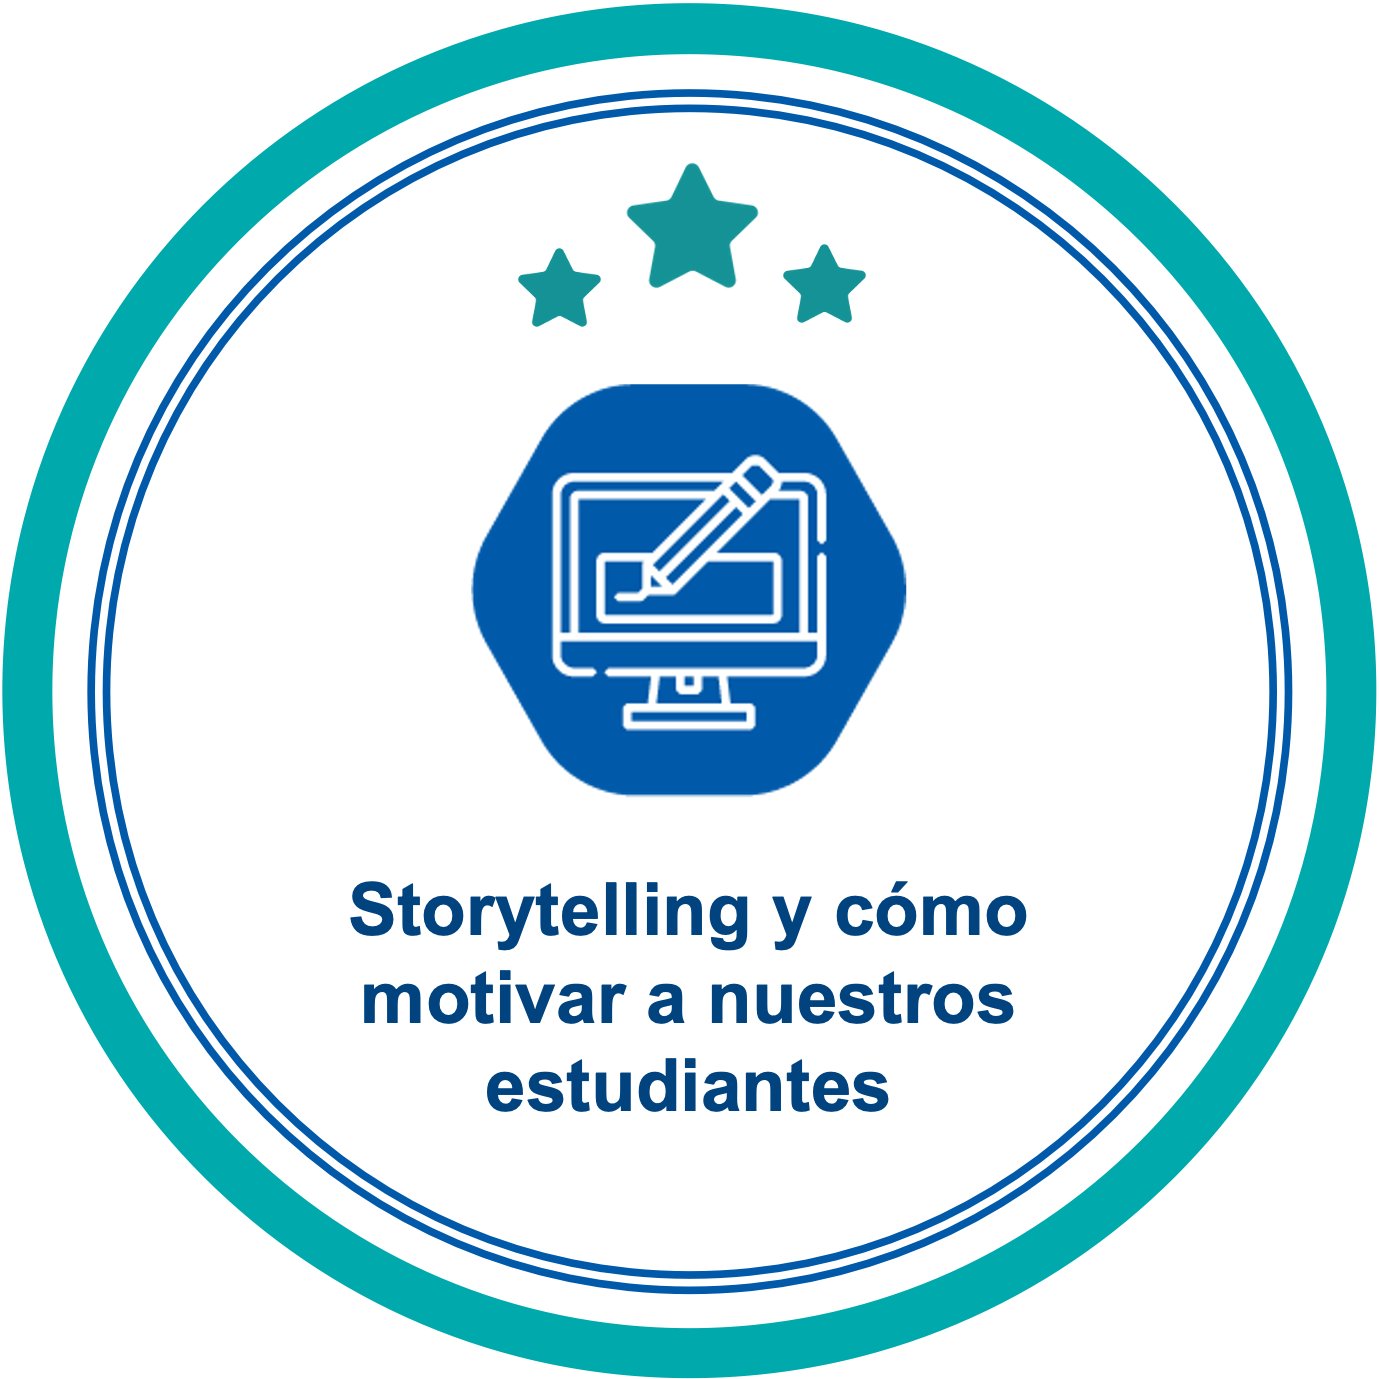 Storytelling y cómo motivar a nuestros estudiantes